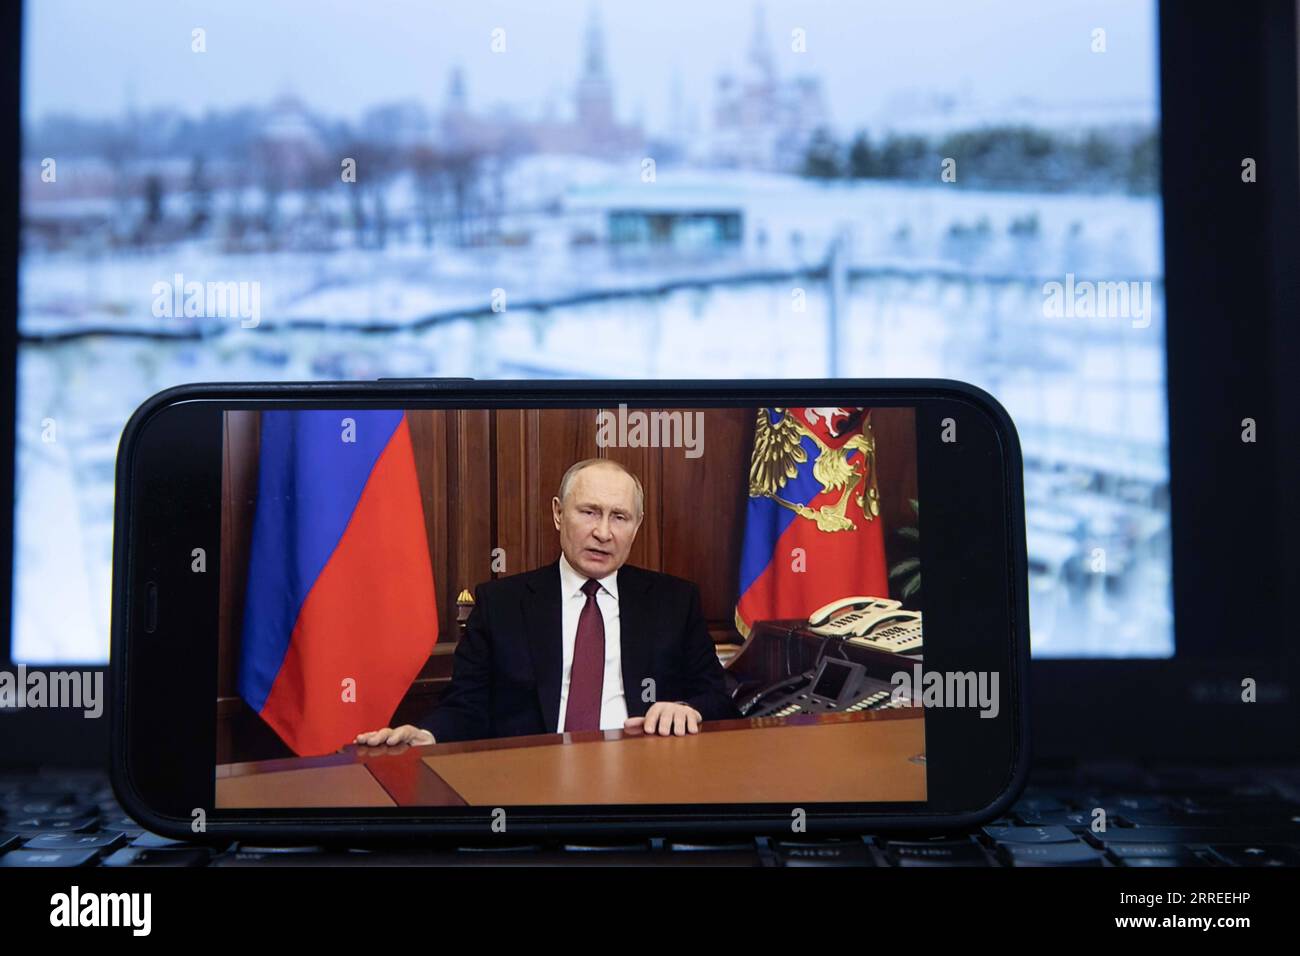 220224 -- MOSCA, 24 febbraio 2022 -- foto scattata il 24 febbraio 2022 mostra una schermata che mostra il presidente russo Vladimir Putin che parla durante un discorso televisivo, a Mosca, in Russia. ANDARE CON Putin autorizza un'operazione militare speciale nella regione del Donbass RUSSIA-MOSCA-PUTIN-INDIRIZZO TELEVISIVO BaixXueqi PUBLICATIONxNOTxINxCHN Foto Stock